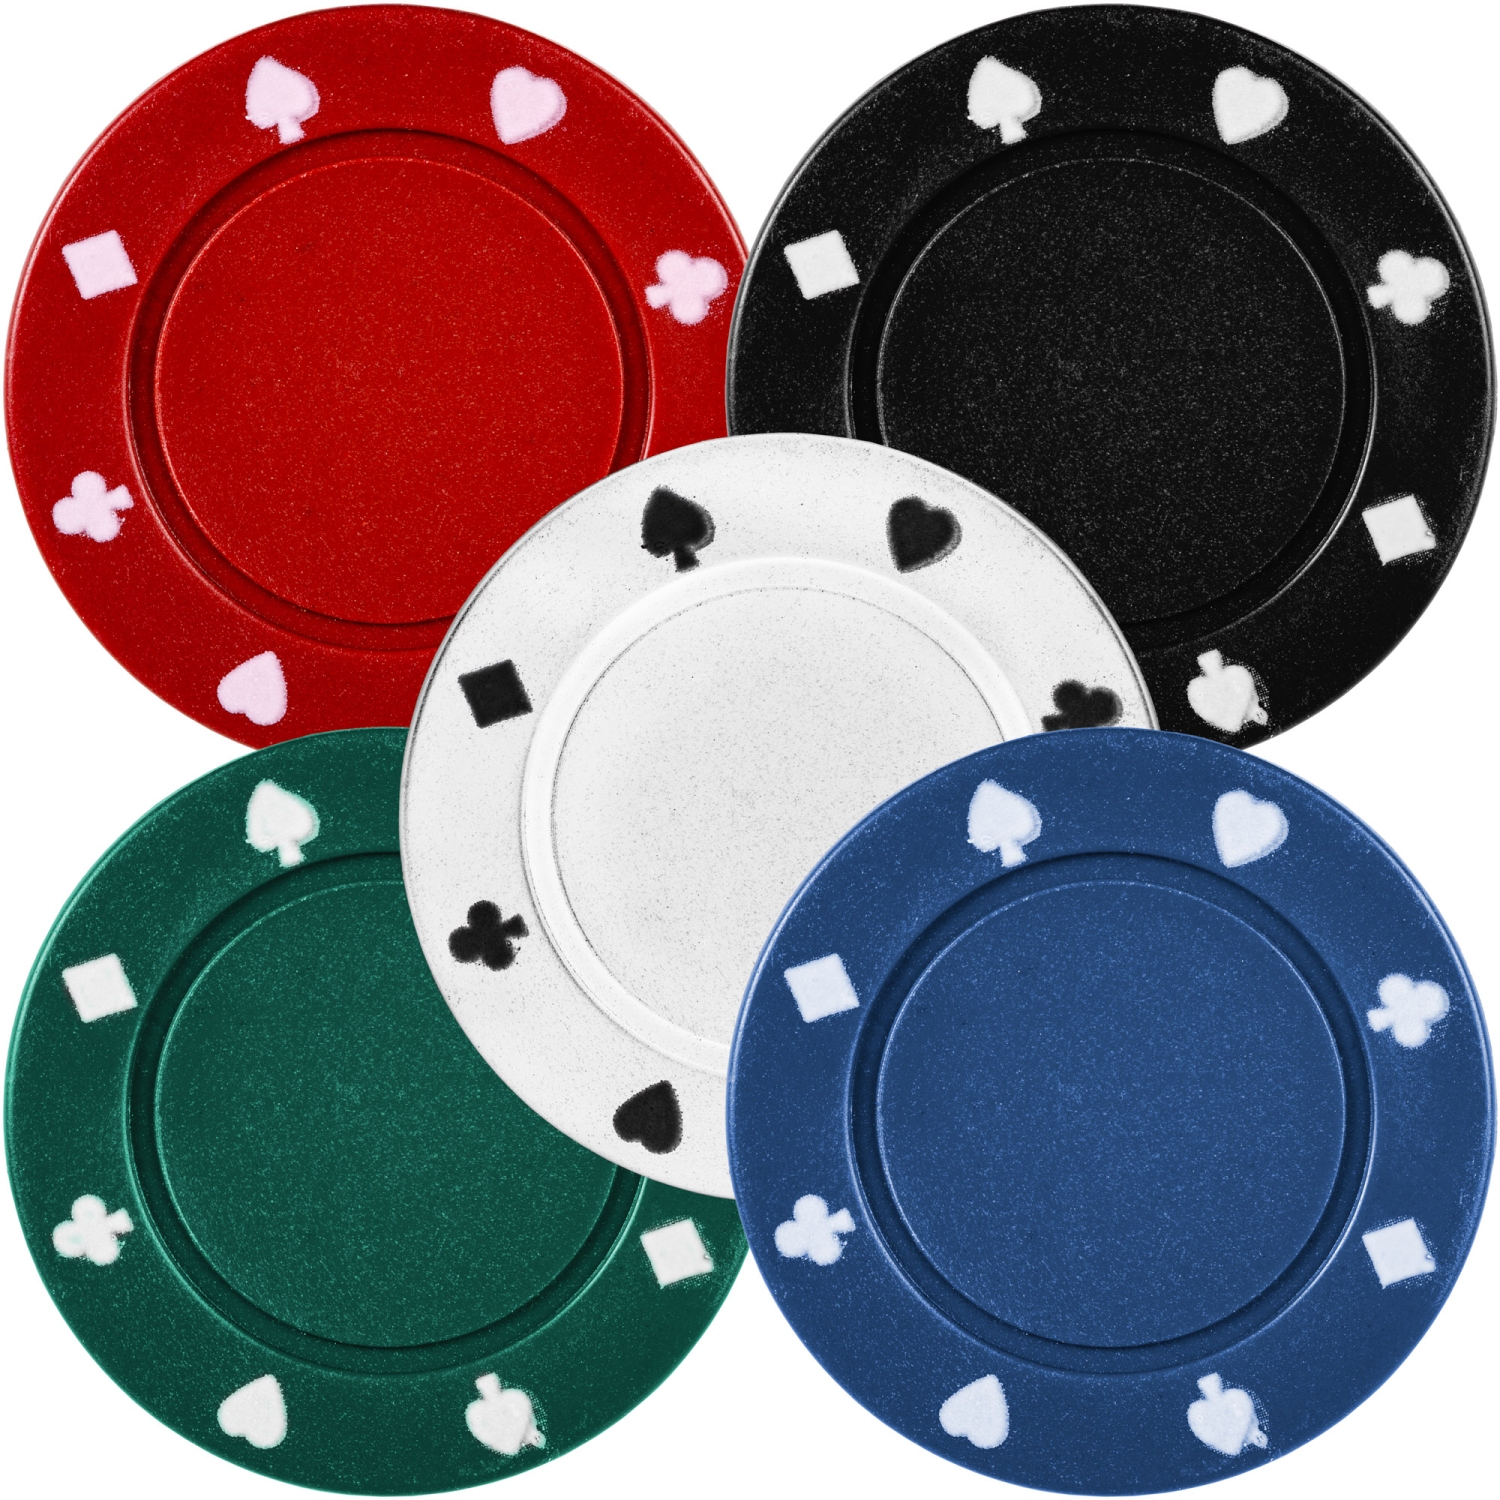 Sada obsahuje 200 pokerových žetonů (40 kusů v 5 různých barvách) s hmotností 4 g